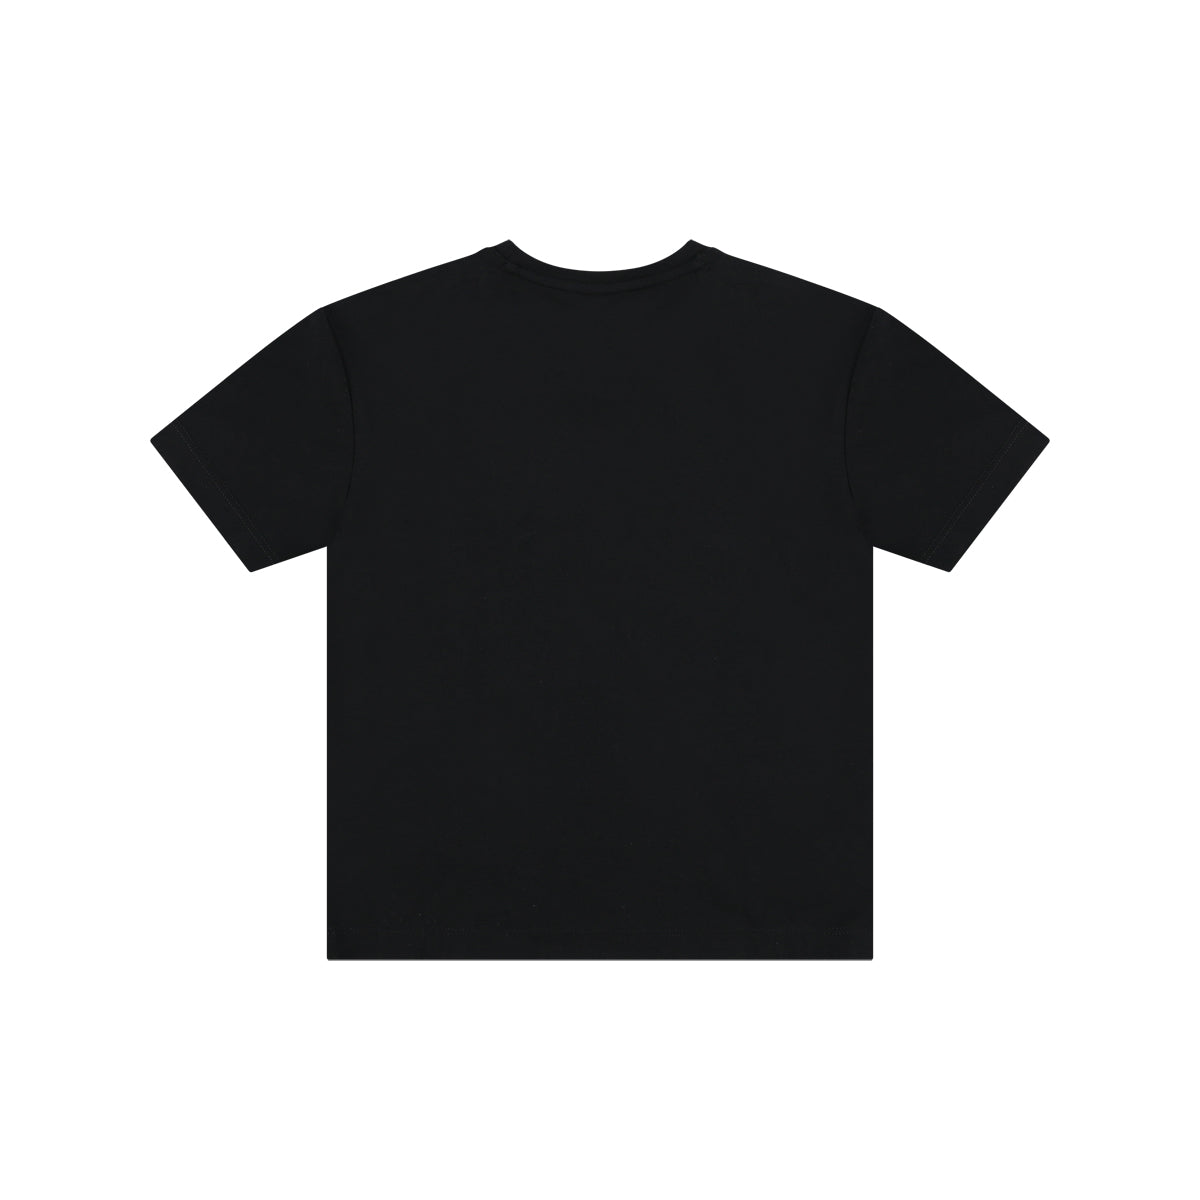 חולצת טי שרט REPLAY פס לוגו שחור בשרוולים לילדים